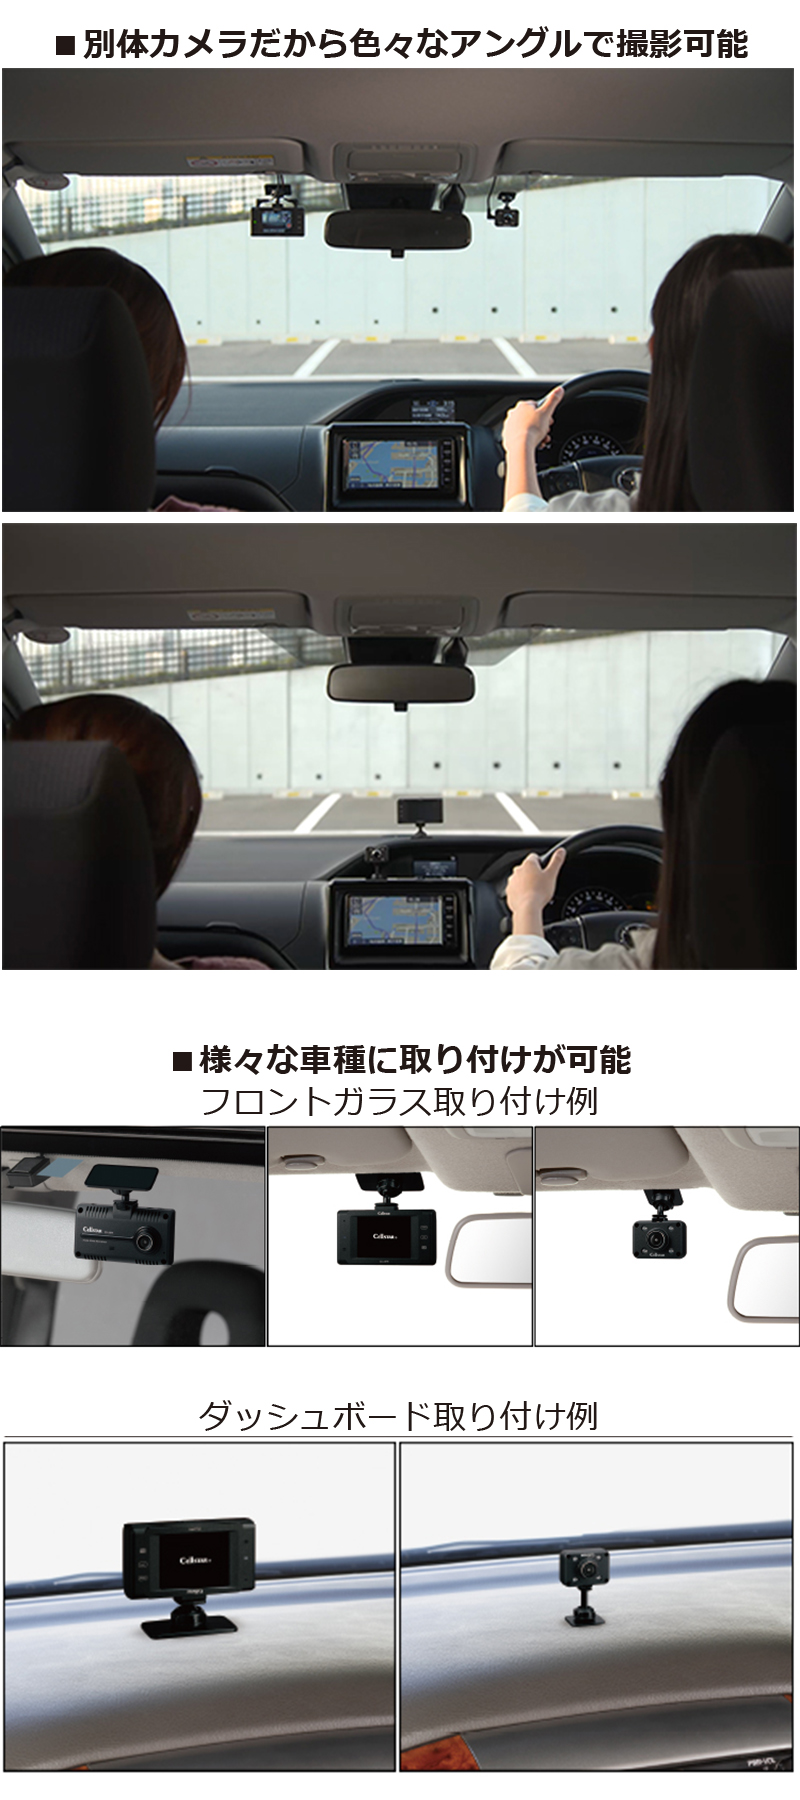 2カメドライブレコーダー フロント 車内 Br Ag423 Drc 製品情報 ｍｓネット株式会社ホームページ